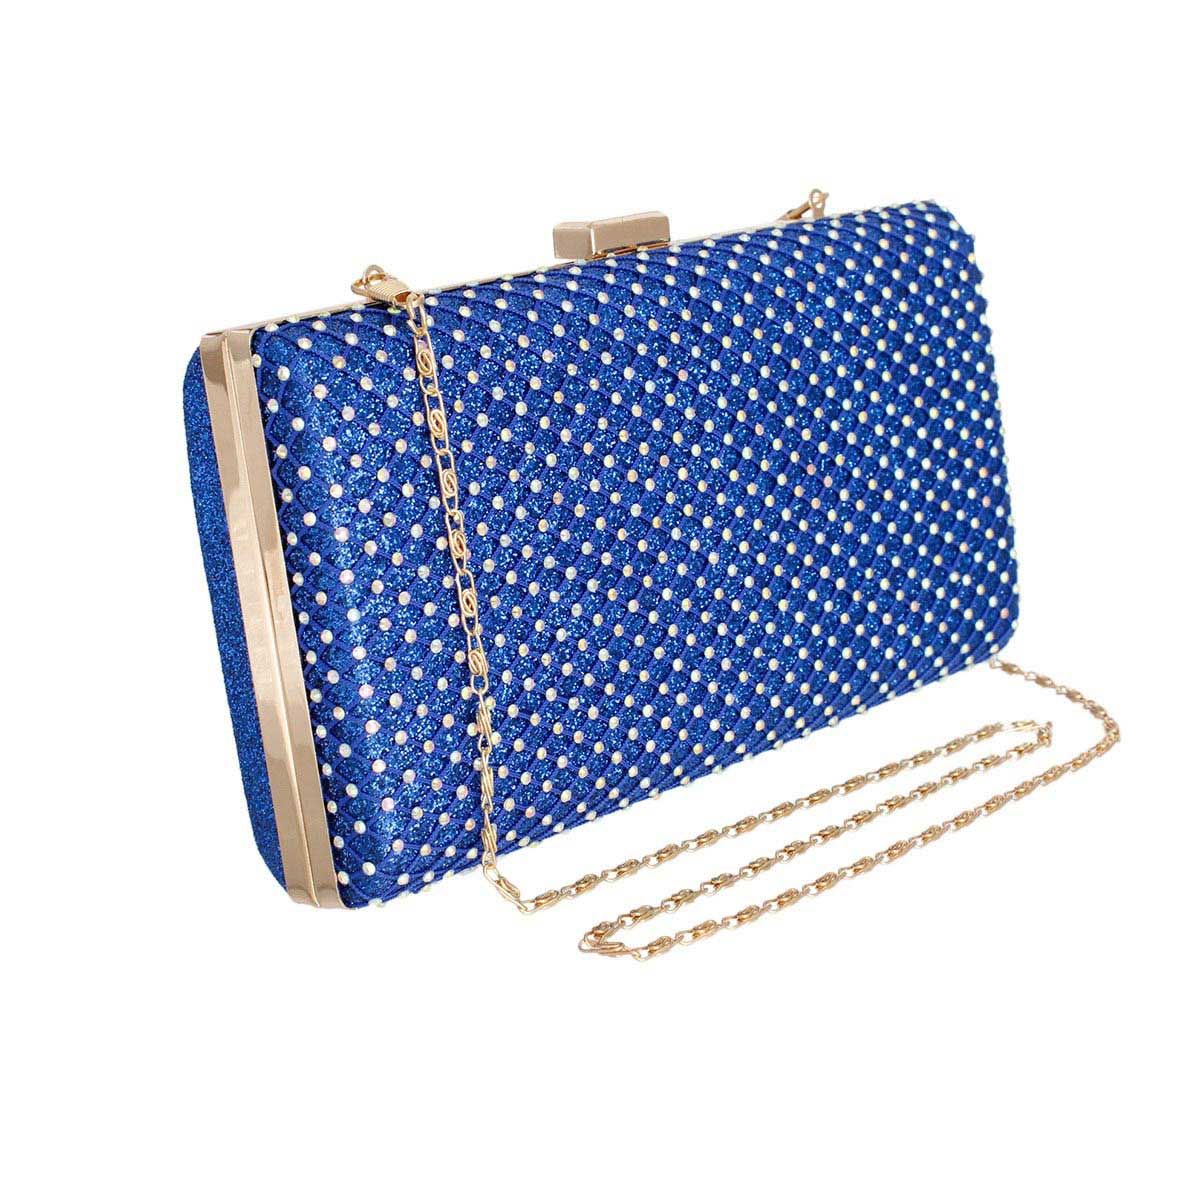 Clutch Hard Case Royal Blue Bag for Women